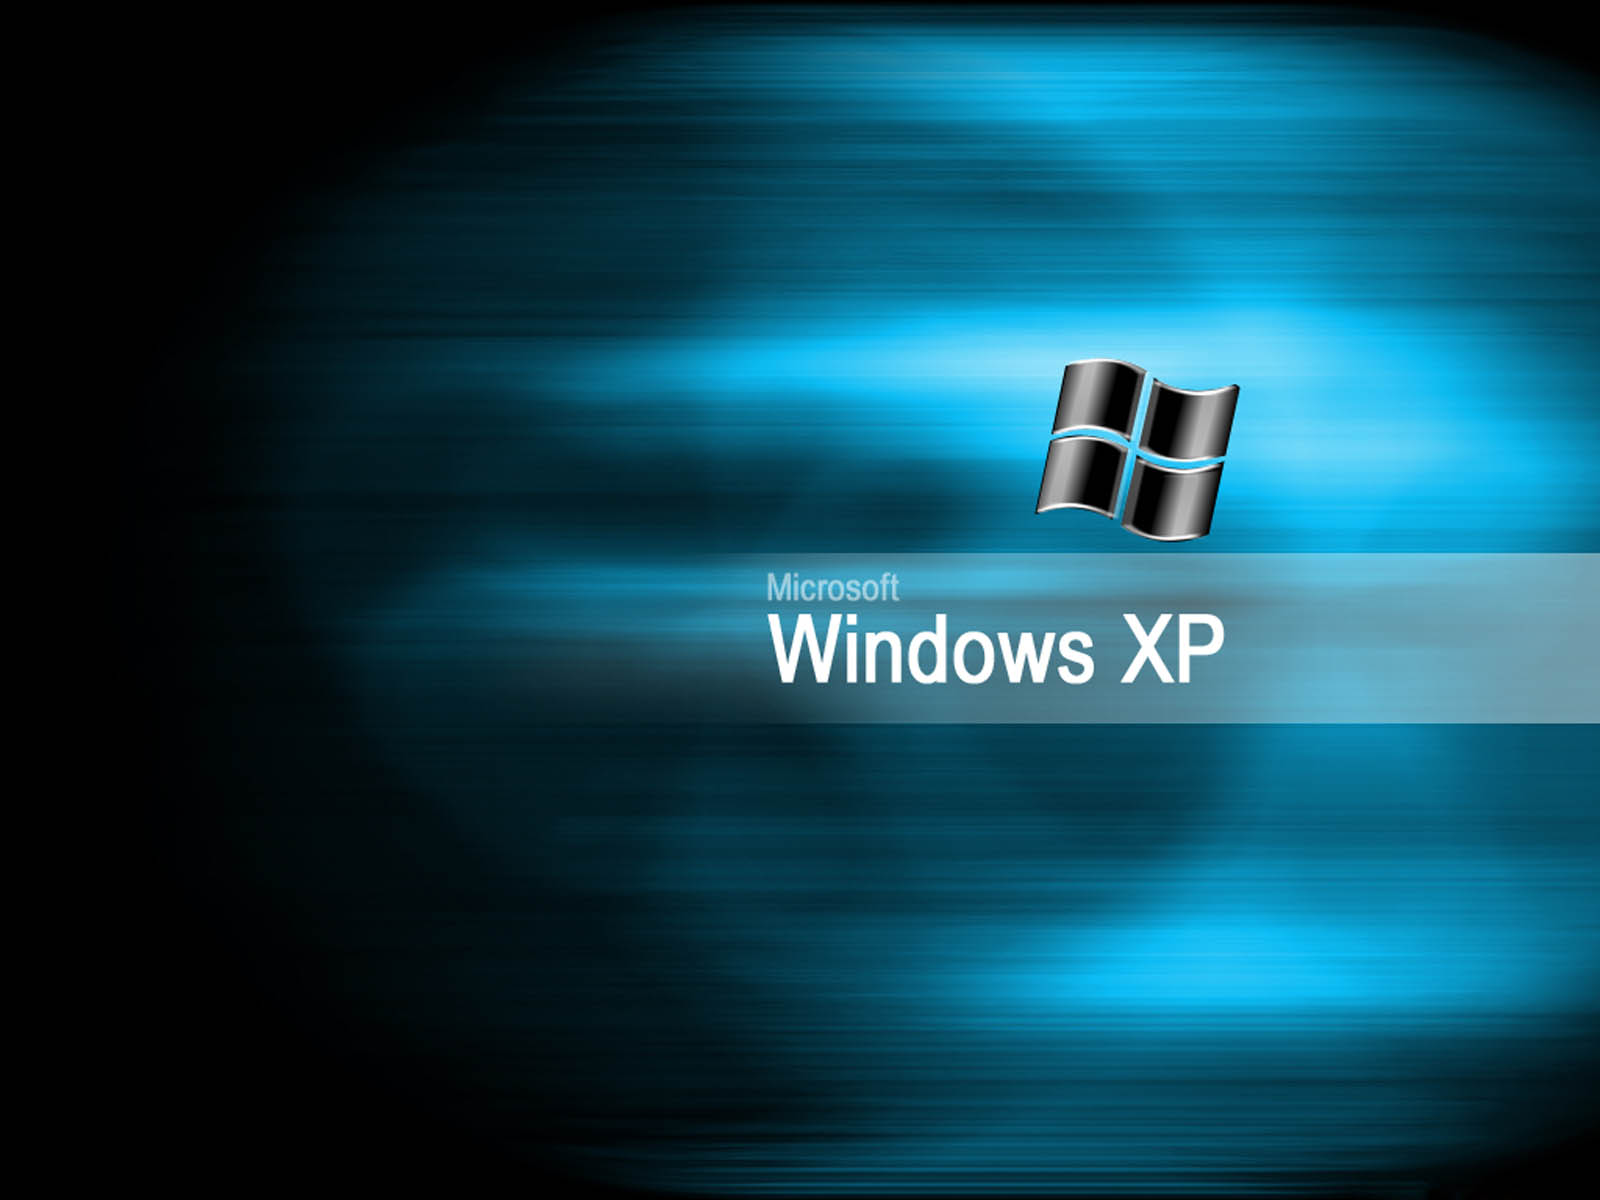 Windows Xp Desktop Wallpaper Picture For